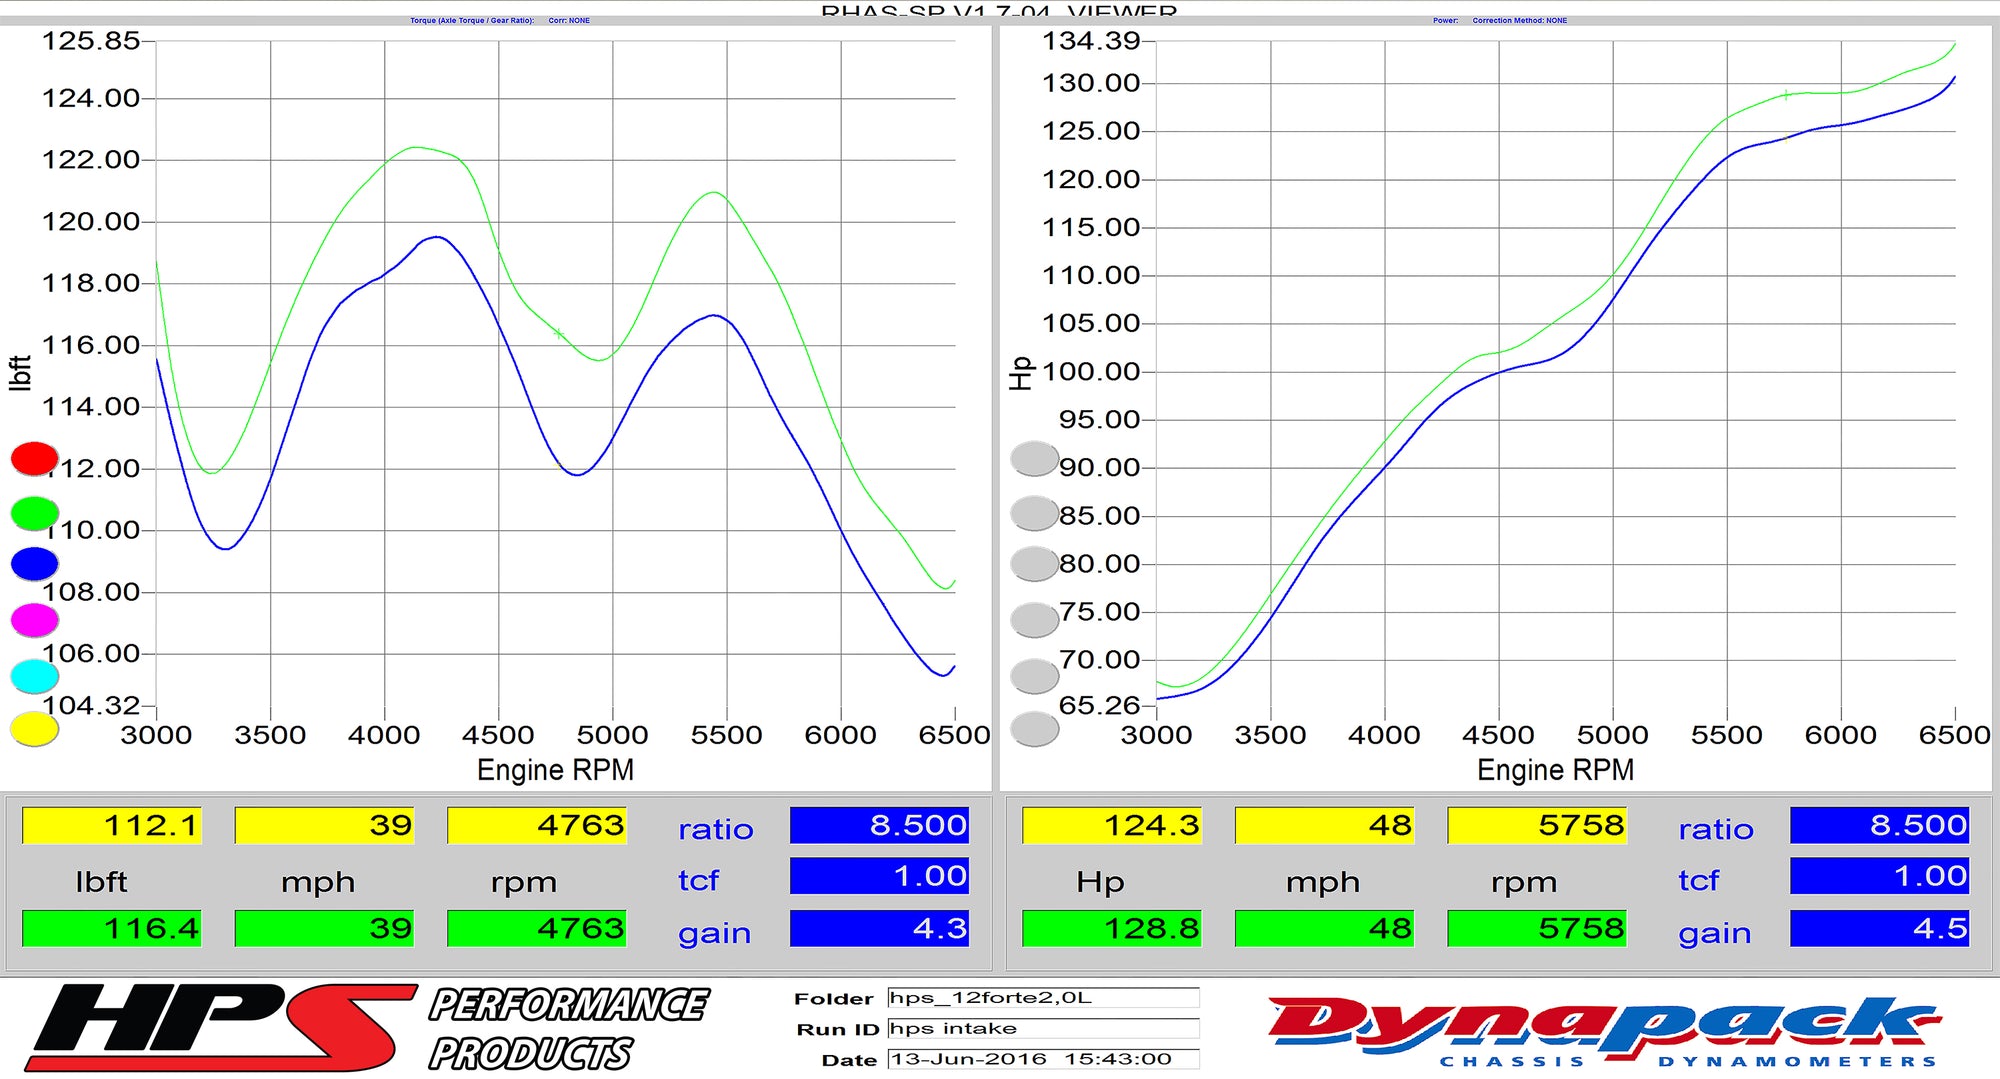 Dyno proven gains 4.5 whp 4.3 ft/lb HPS Performance Shortram Air Intake Kit 2010-2013 Kia Forte Koup 2.4L 827-552BL